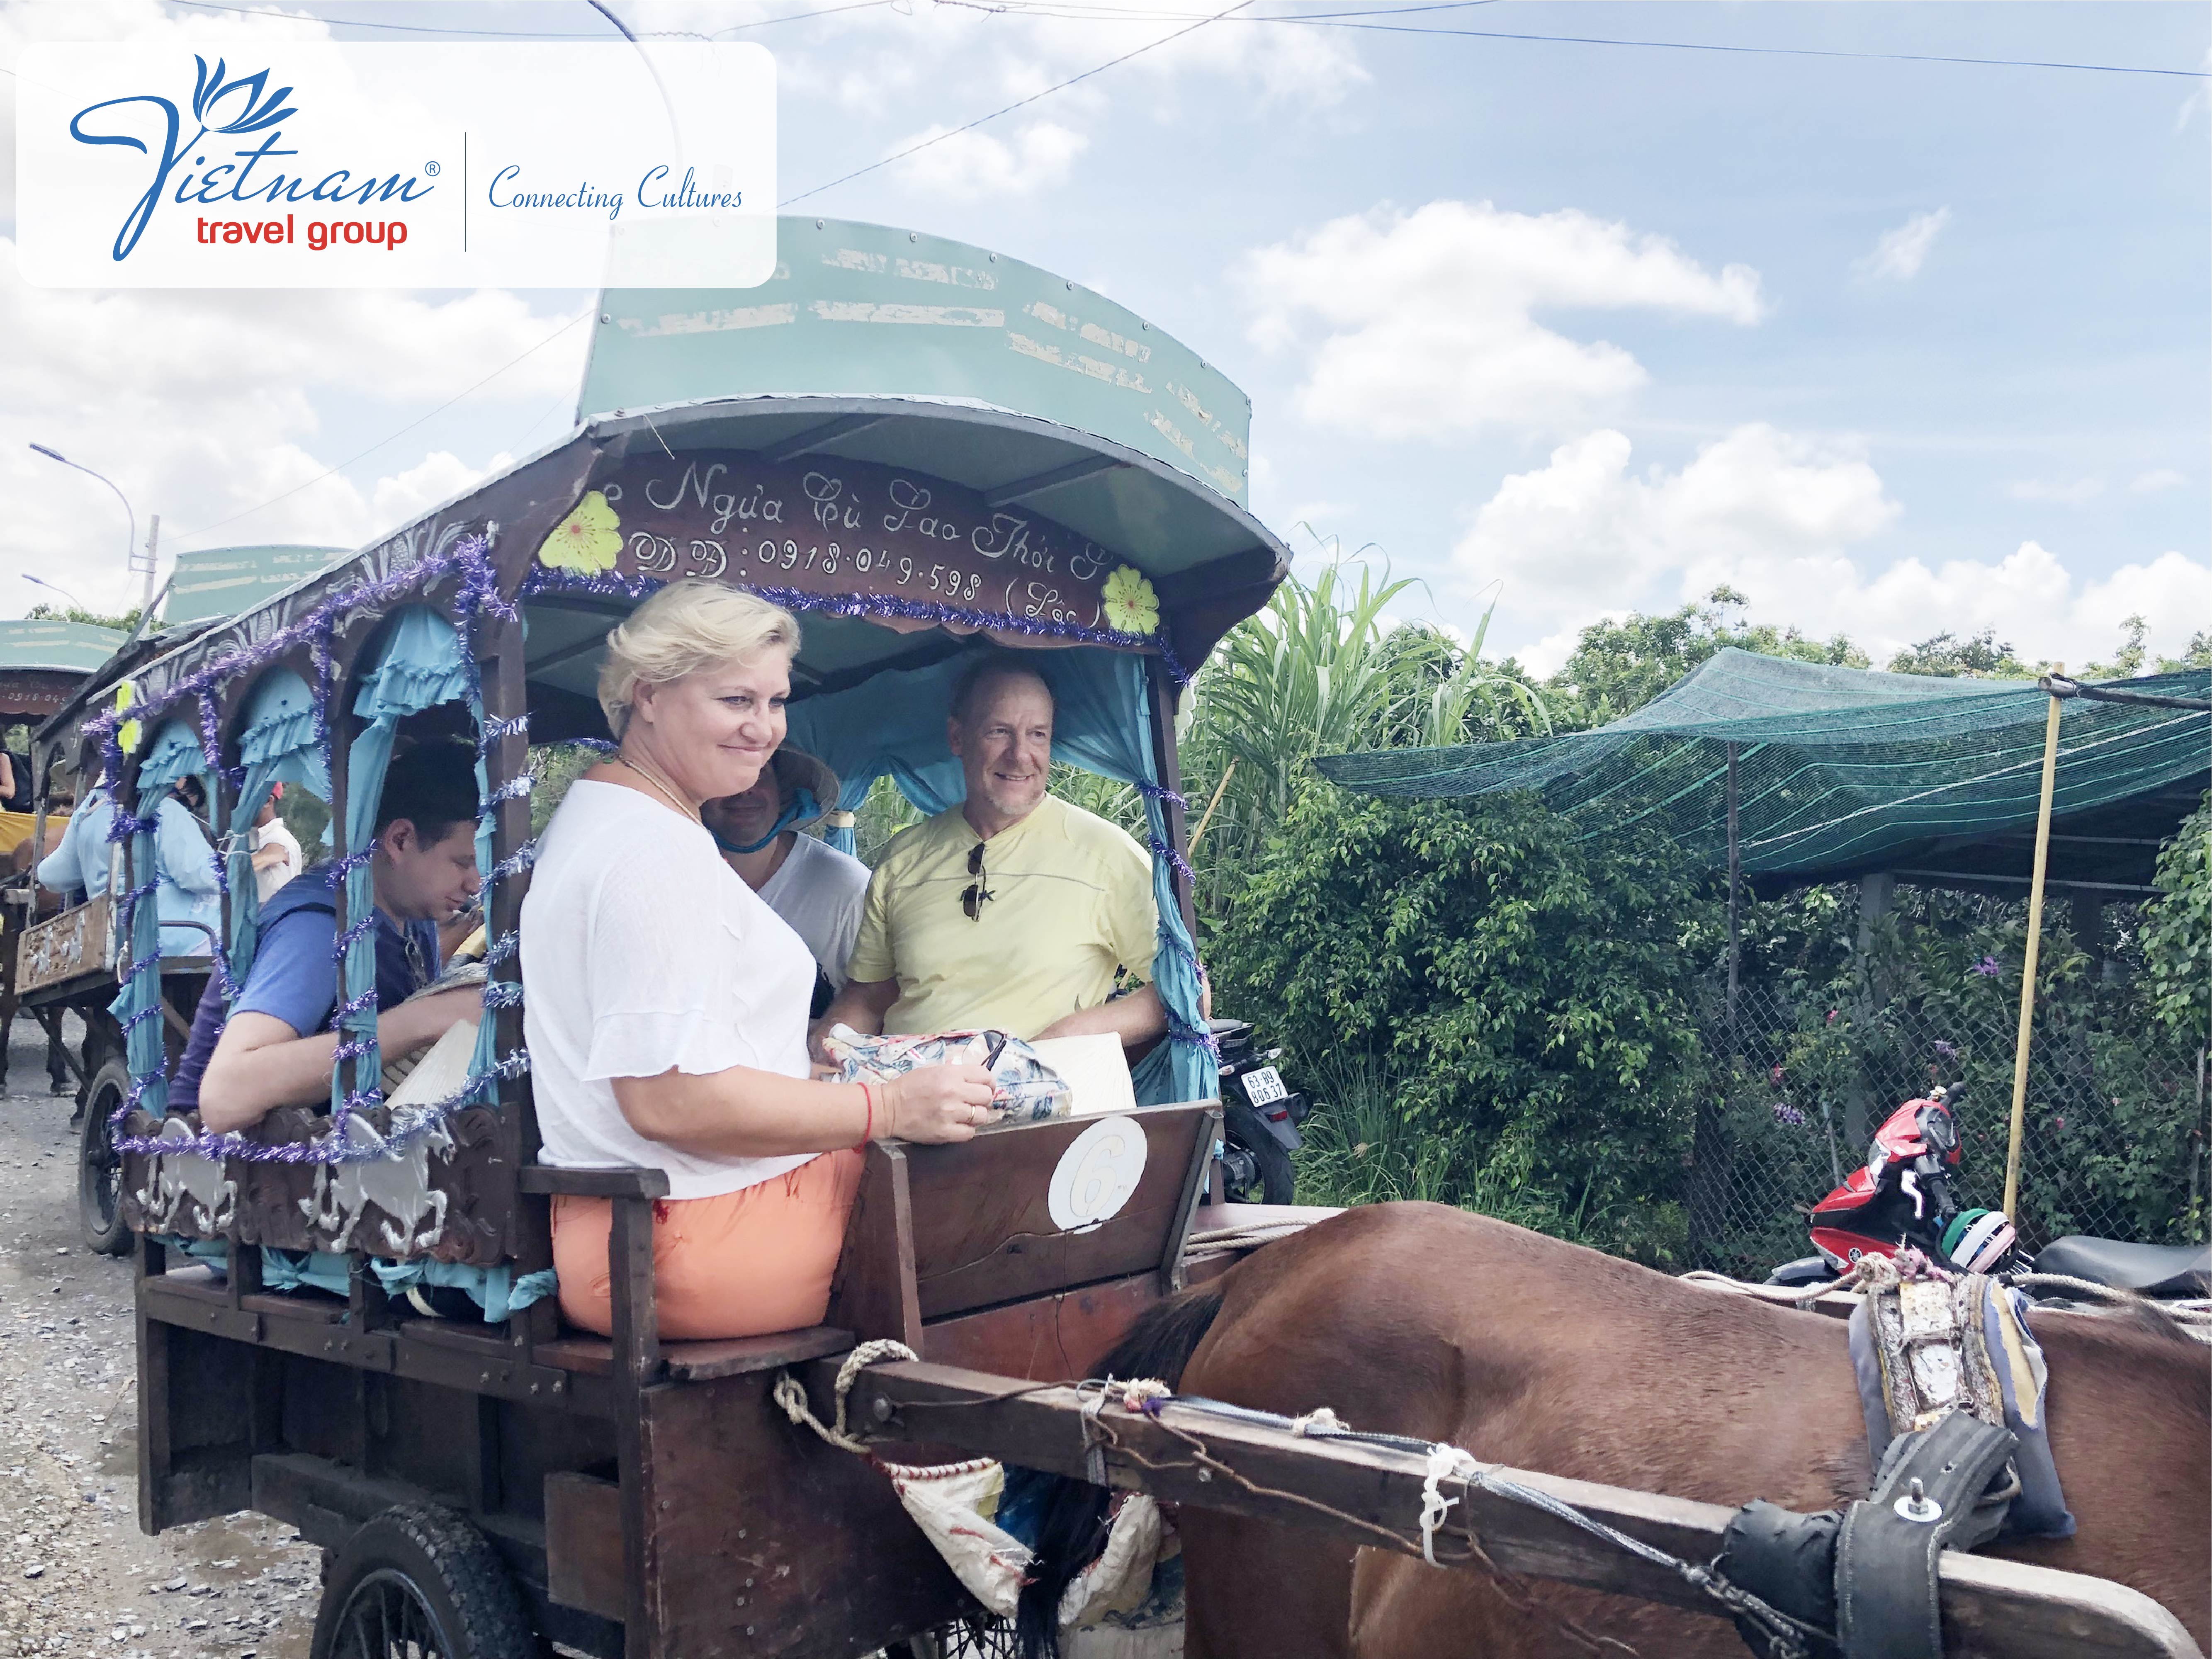 Horse cart ride - Vietnam Travel Group